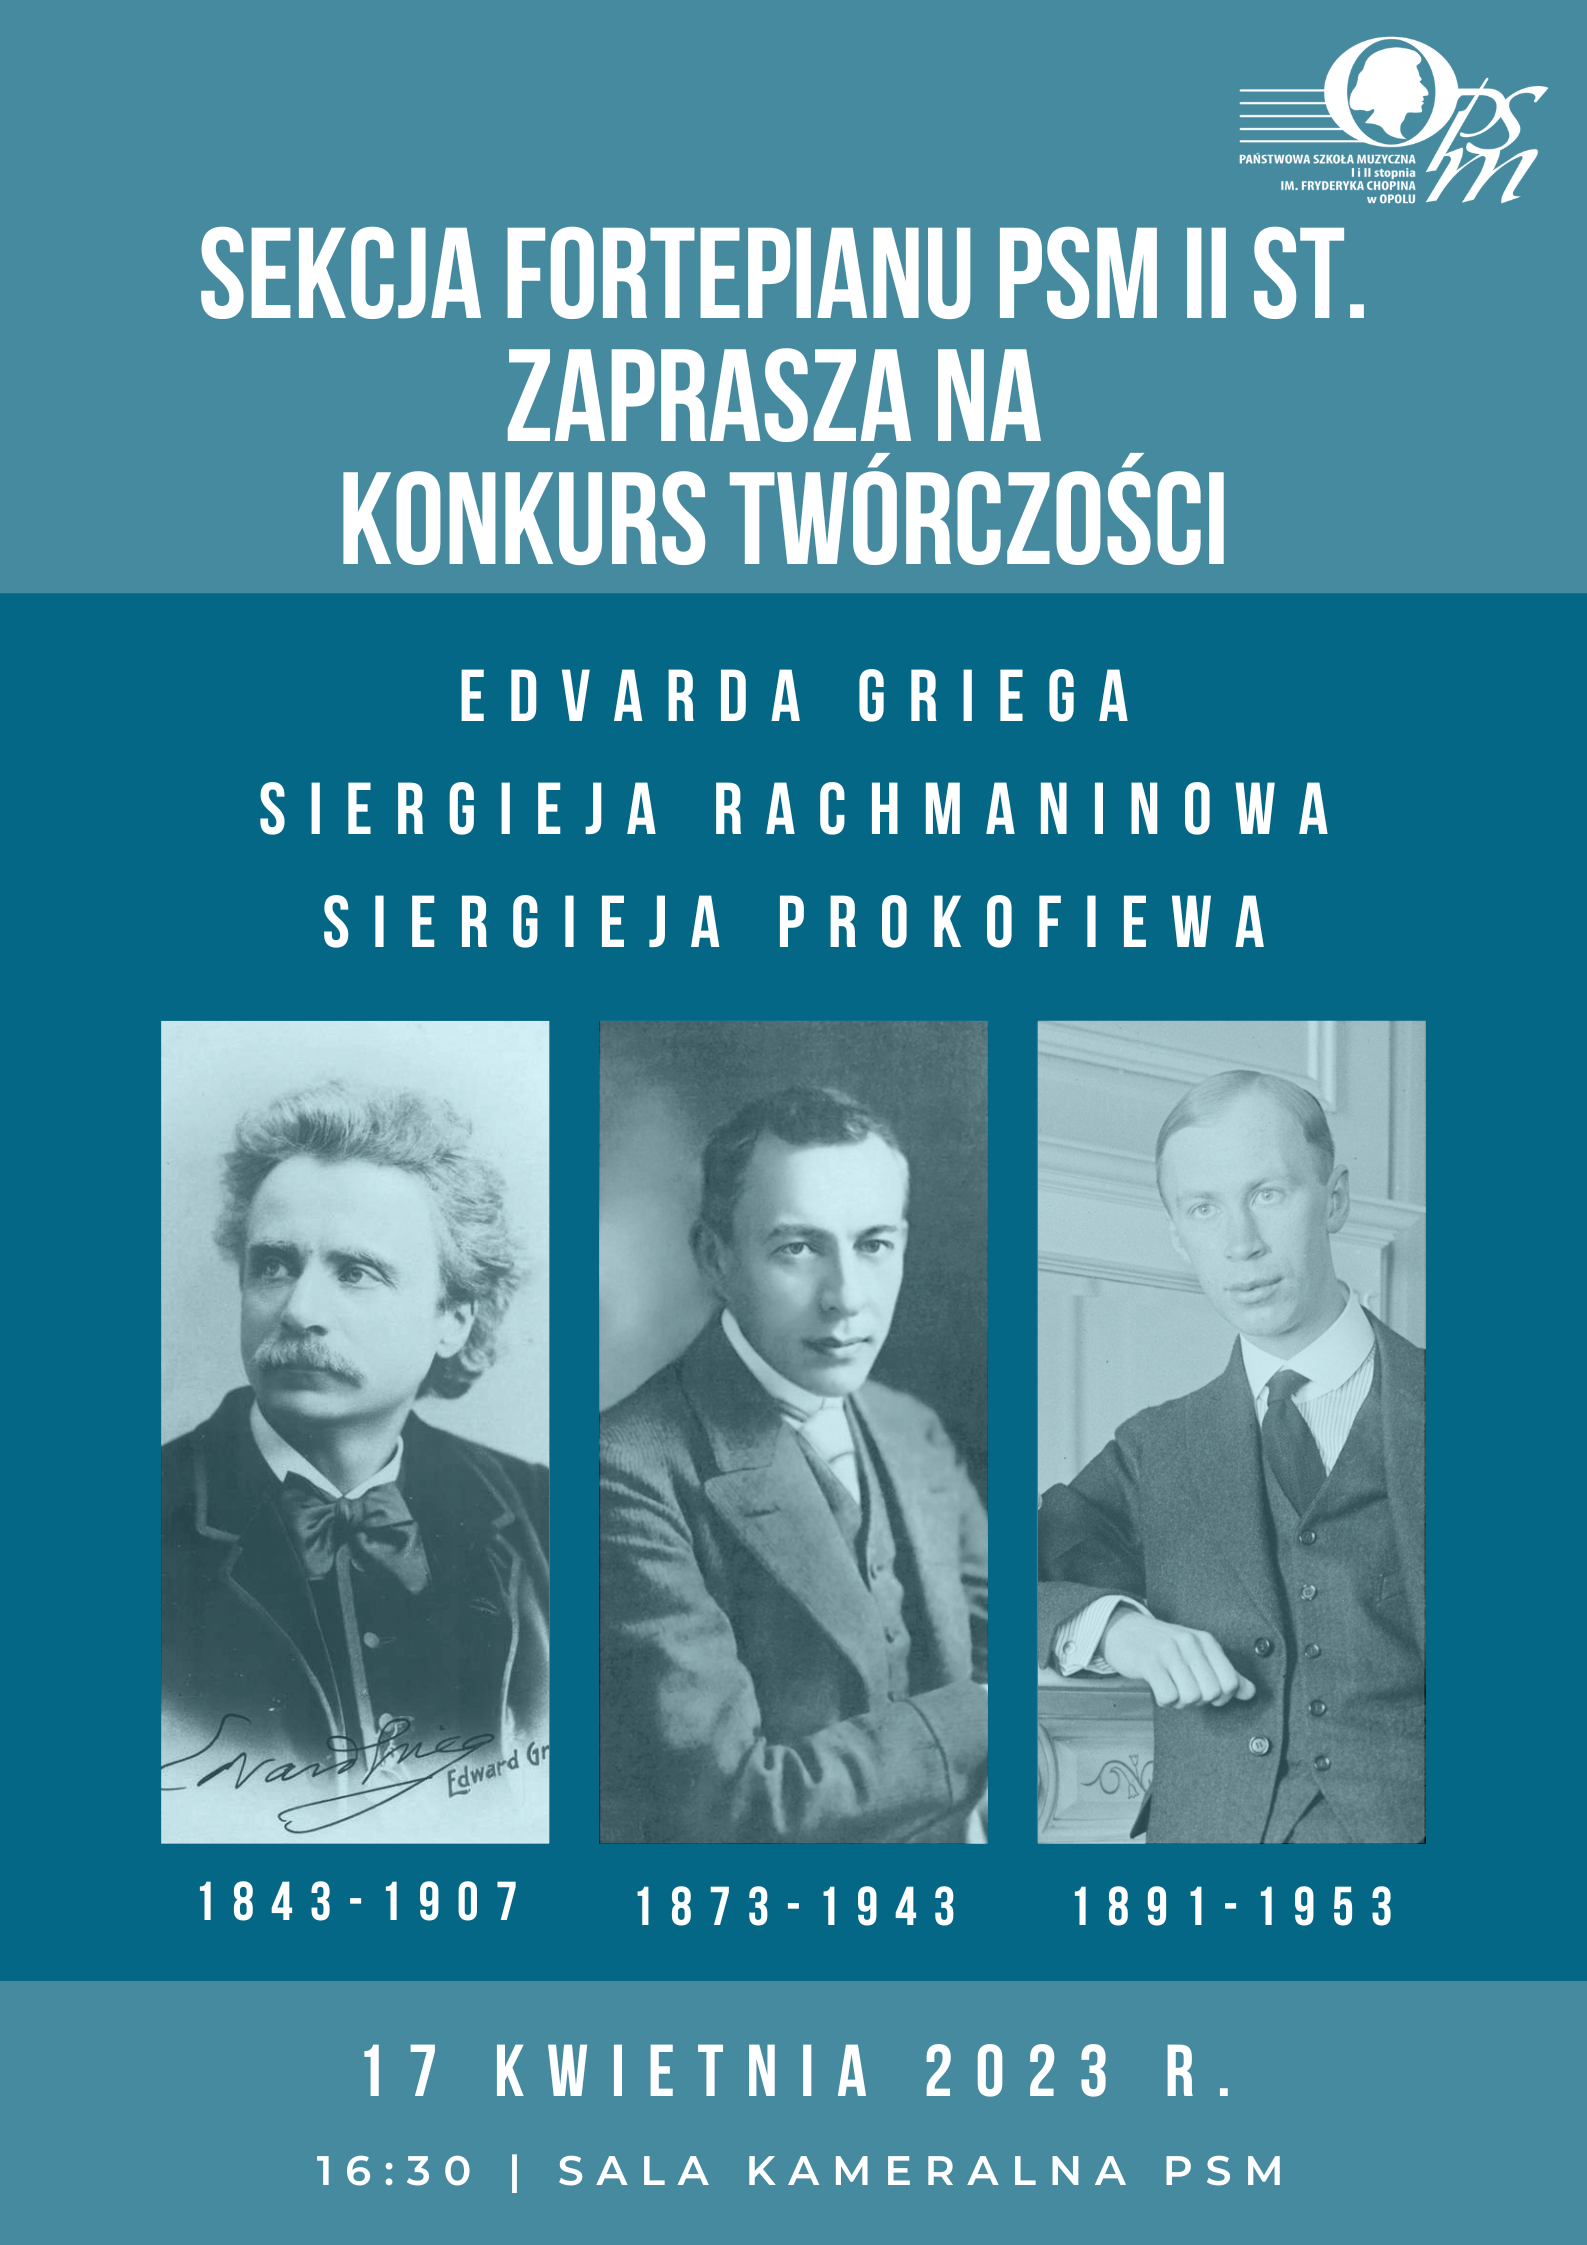 Plakat promujący Konkurs twórczości Griega, Rachmaninowa i Prokofiewa